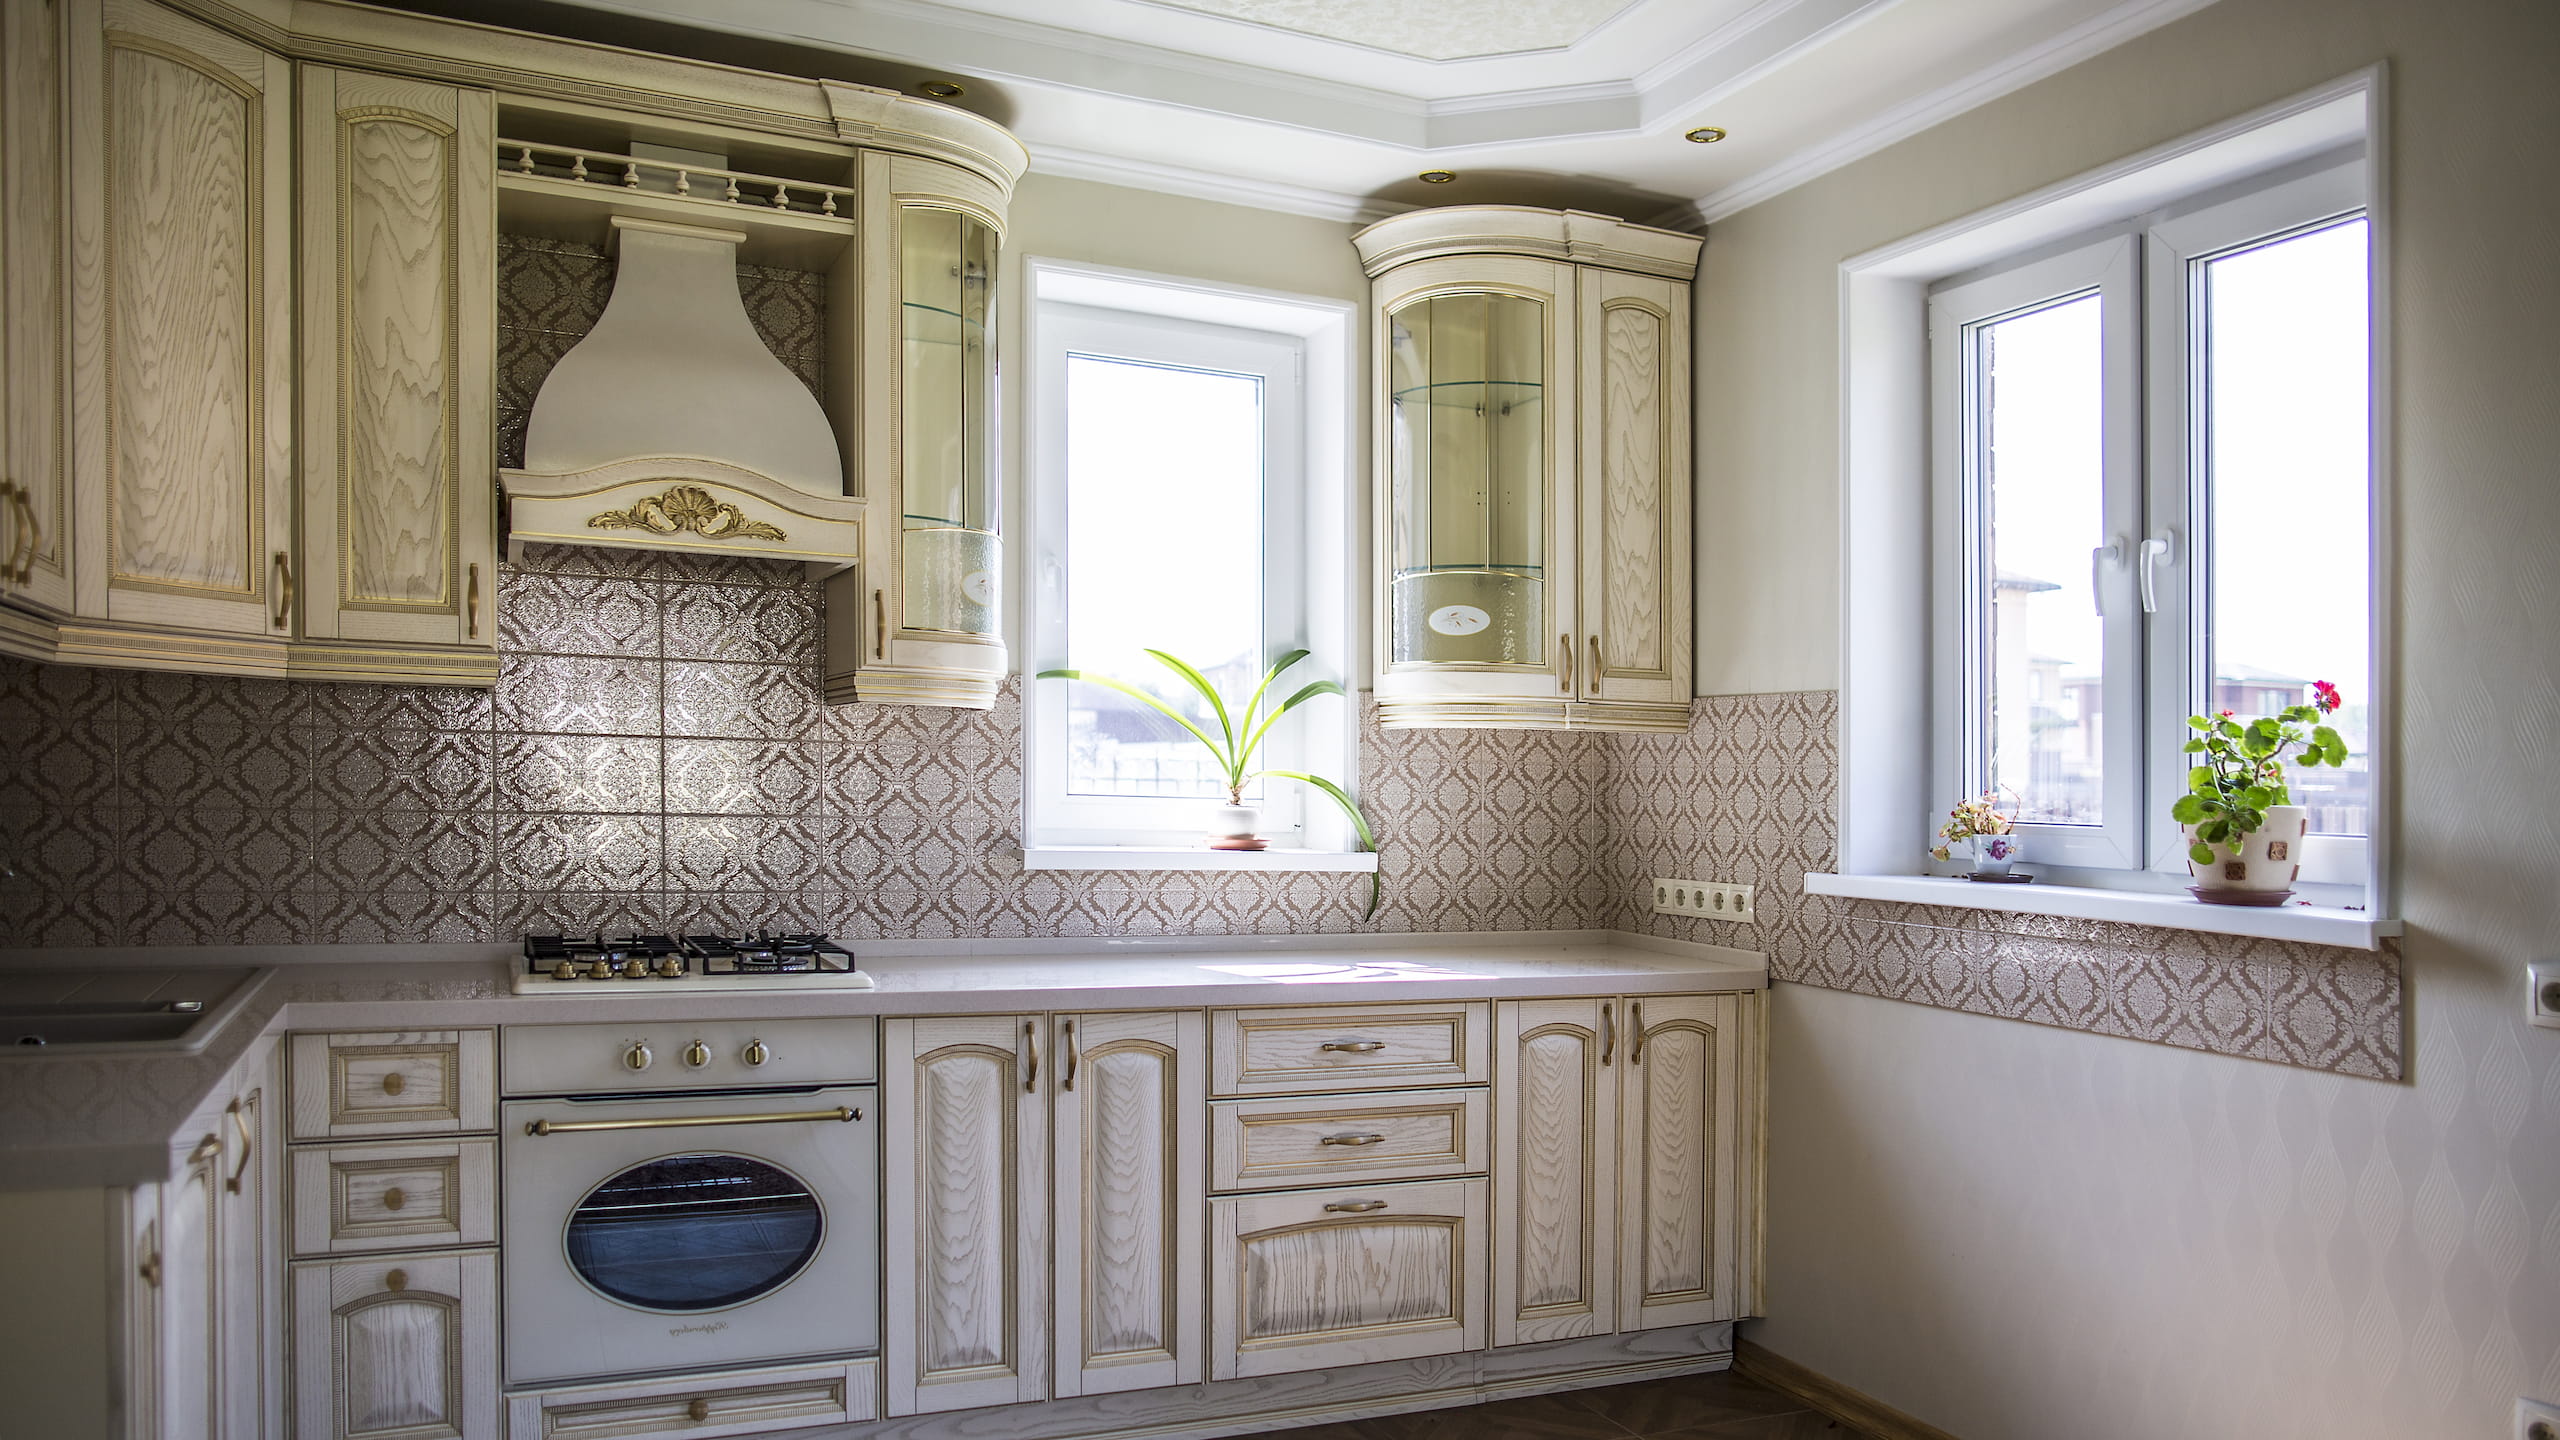 Окна Melke Smart украшают красивую, стильную кухню.